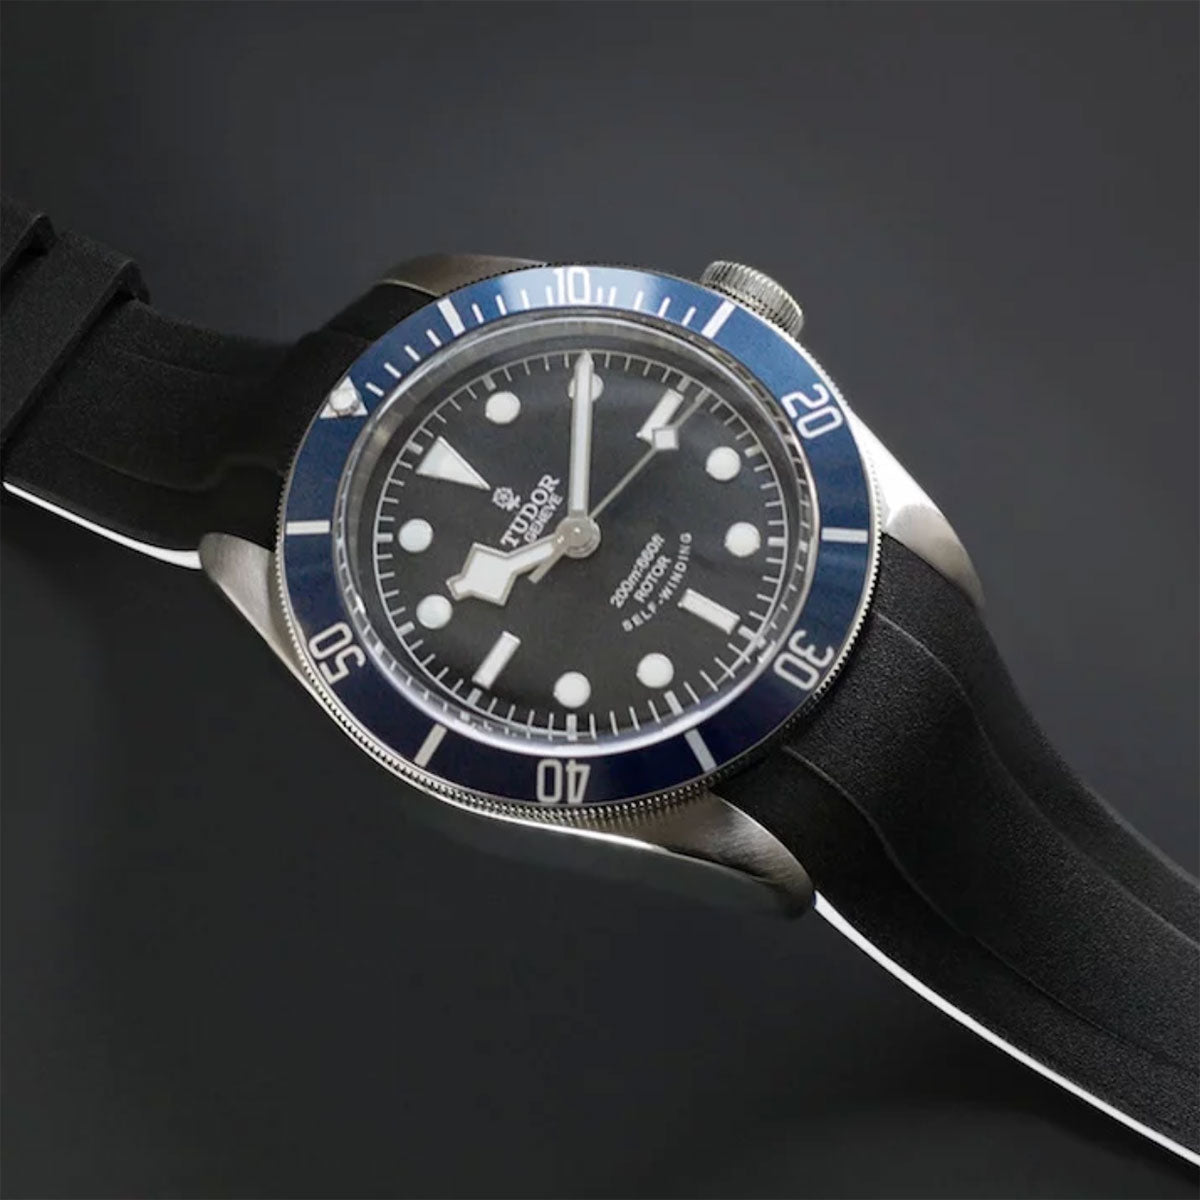 Tudor - Rubber B - Bracelet caoutchouc pour Heritage Black Bay 41mm - Série classique Vulchromatic® - watch band leather strap - ABP Concept -